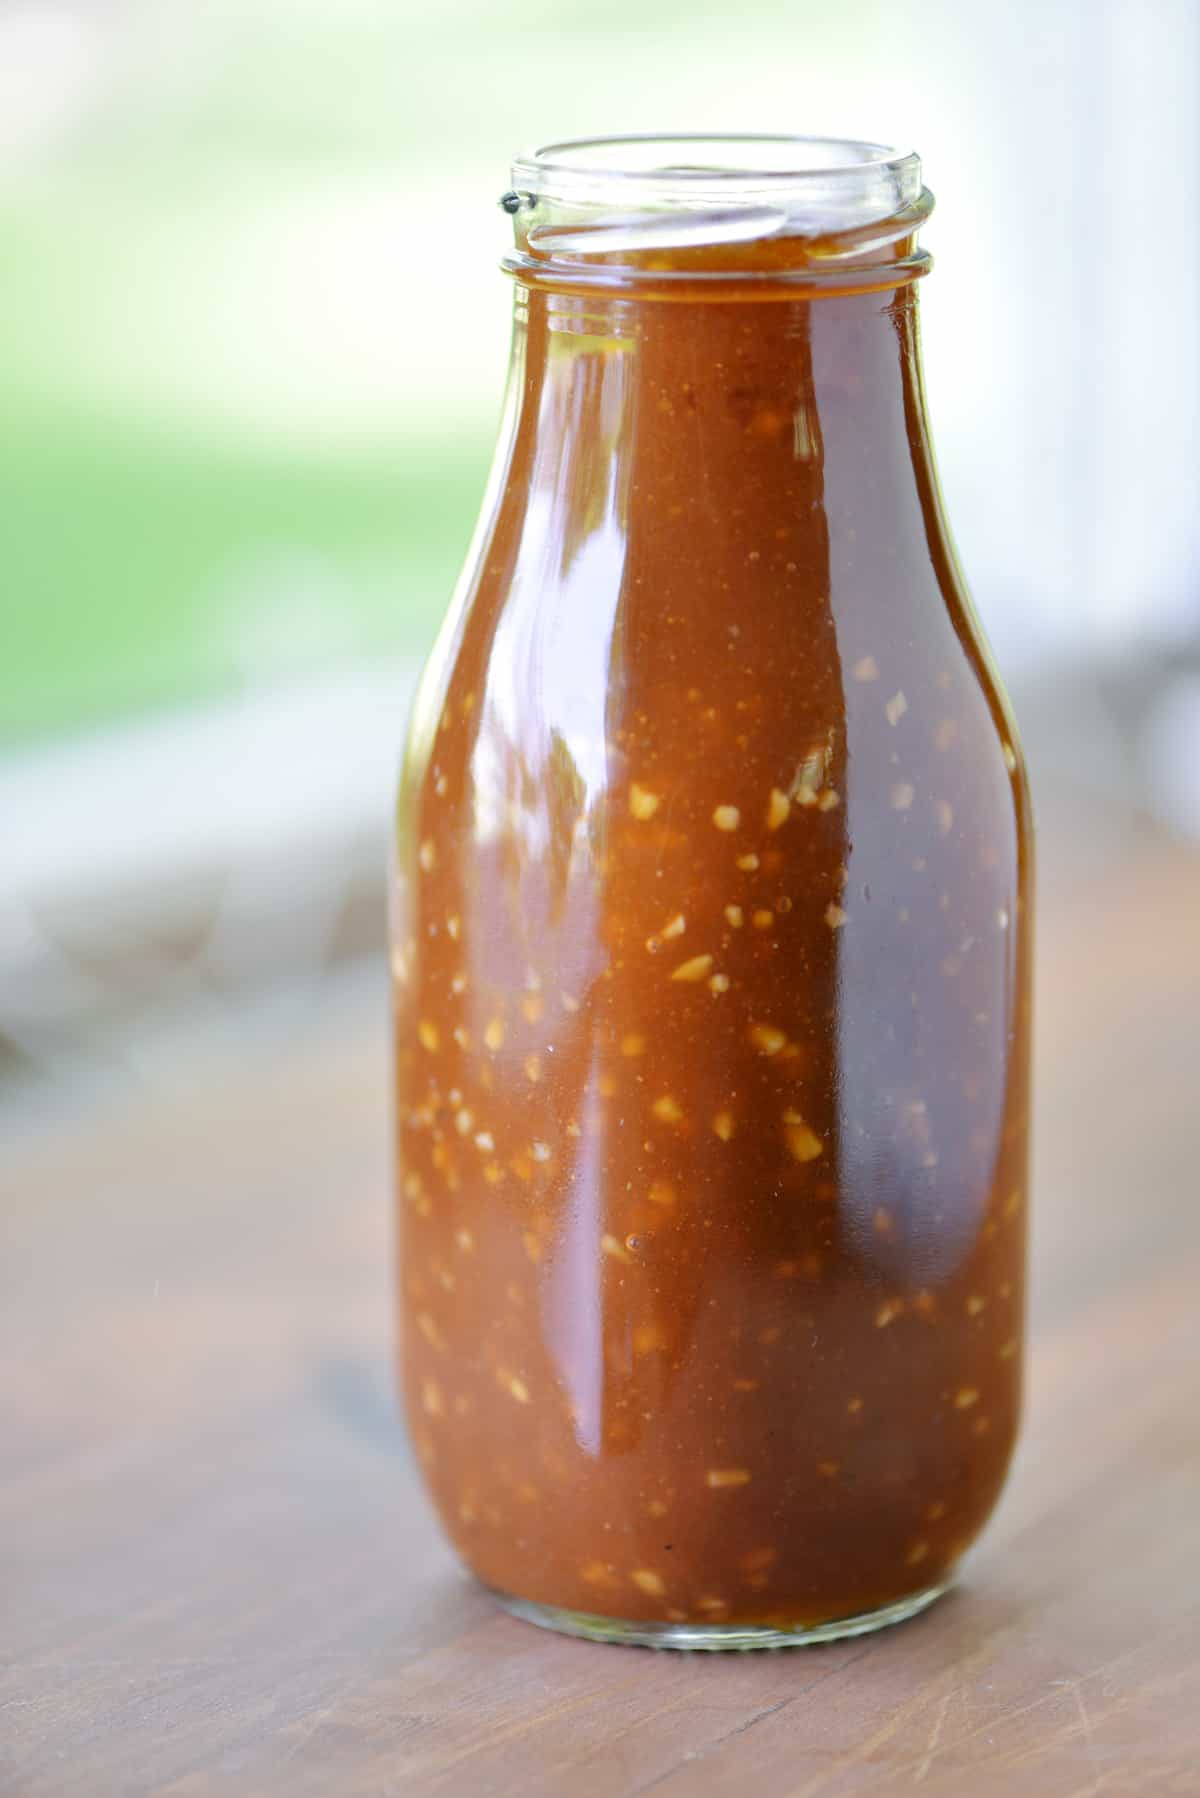 Homemade stir fry sauce in a glass jar.